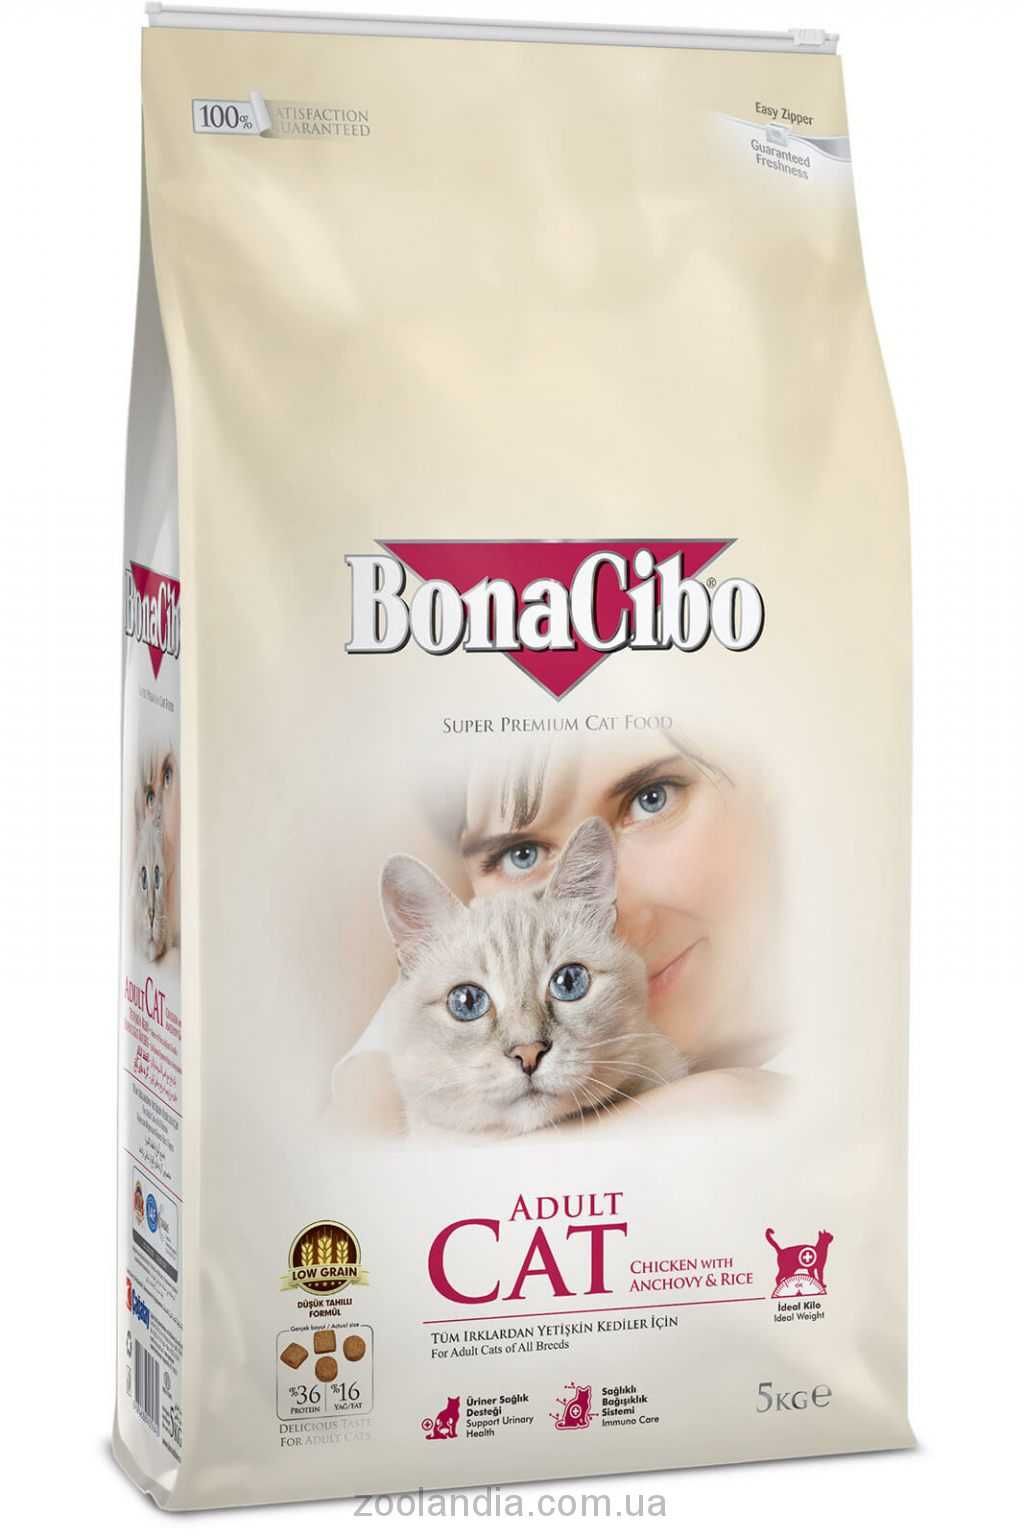 Bonacibo Adult Cat (Бонасибо) корм для взрослых котов всех пород 5кг